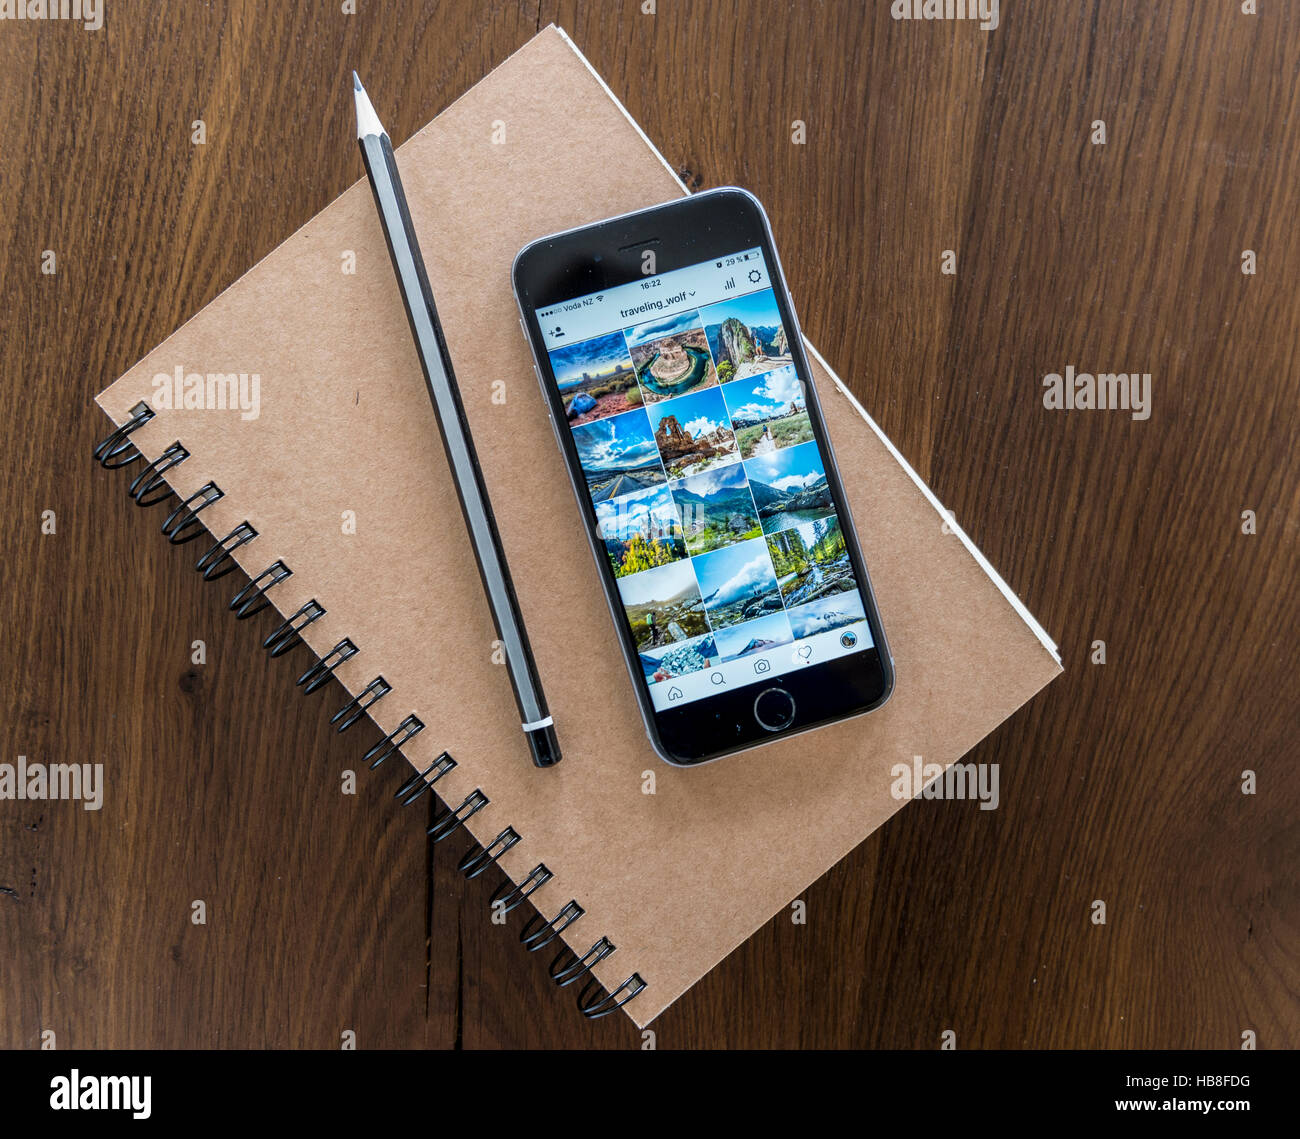 Galerie photo Instagram affichées sur l'écran du smartphone, carnet et un stylo sur une table en bois Banque D'Images